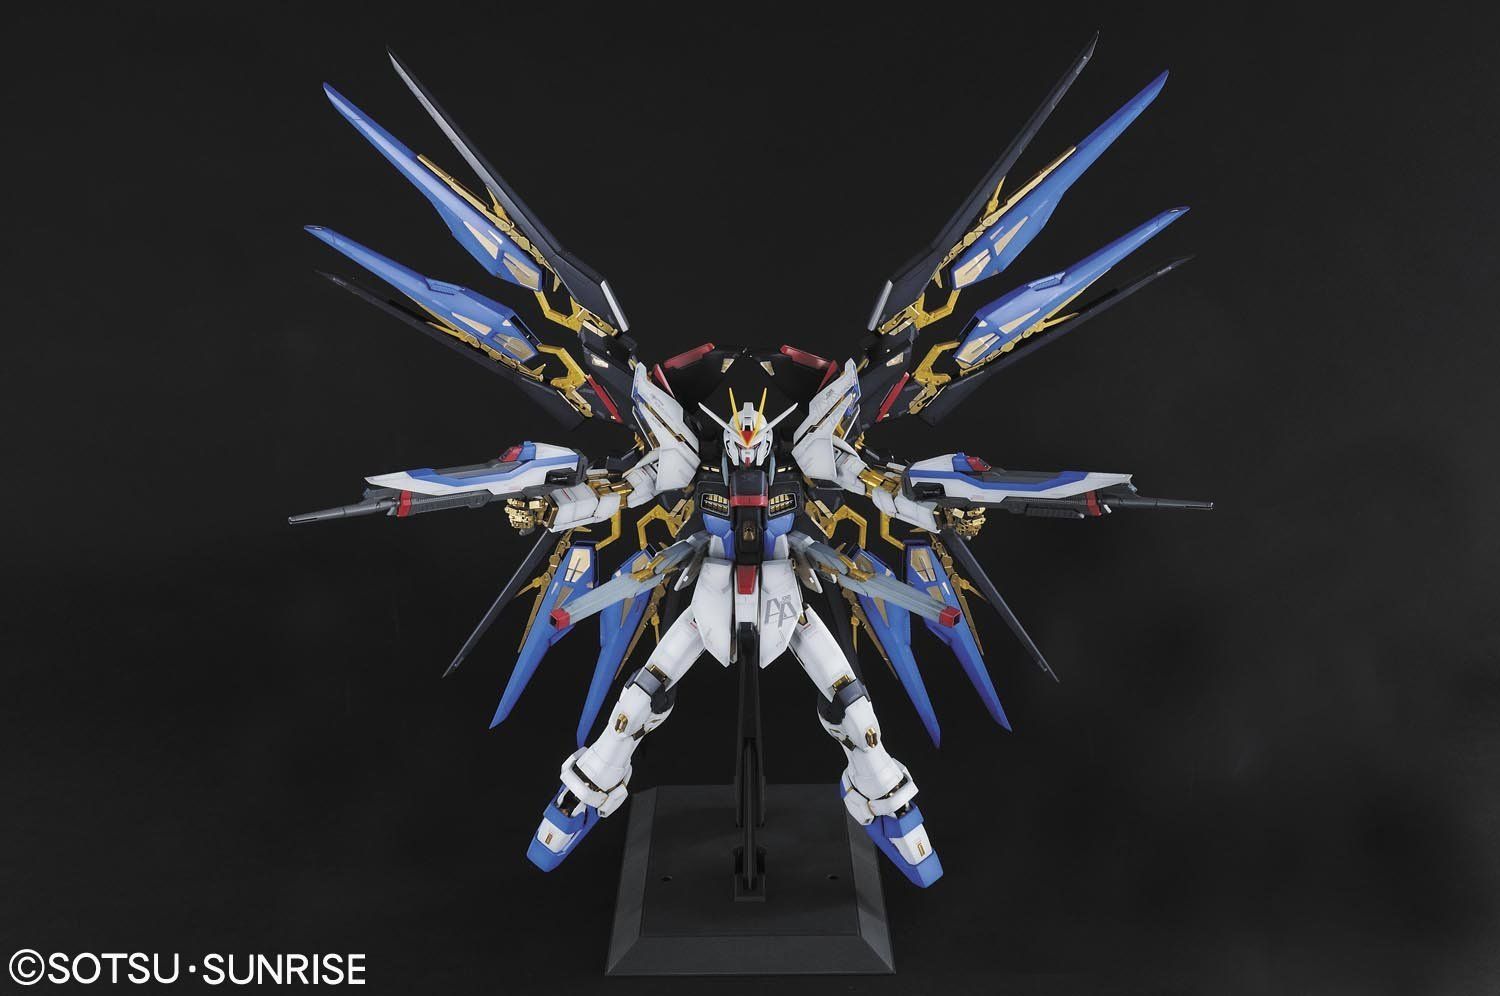 Gundam 1/60 PG Seed Destiny ZGMF-X20A Strike Freedom Model Kit